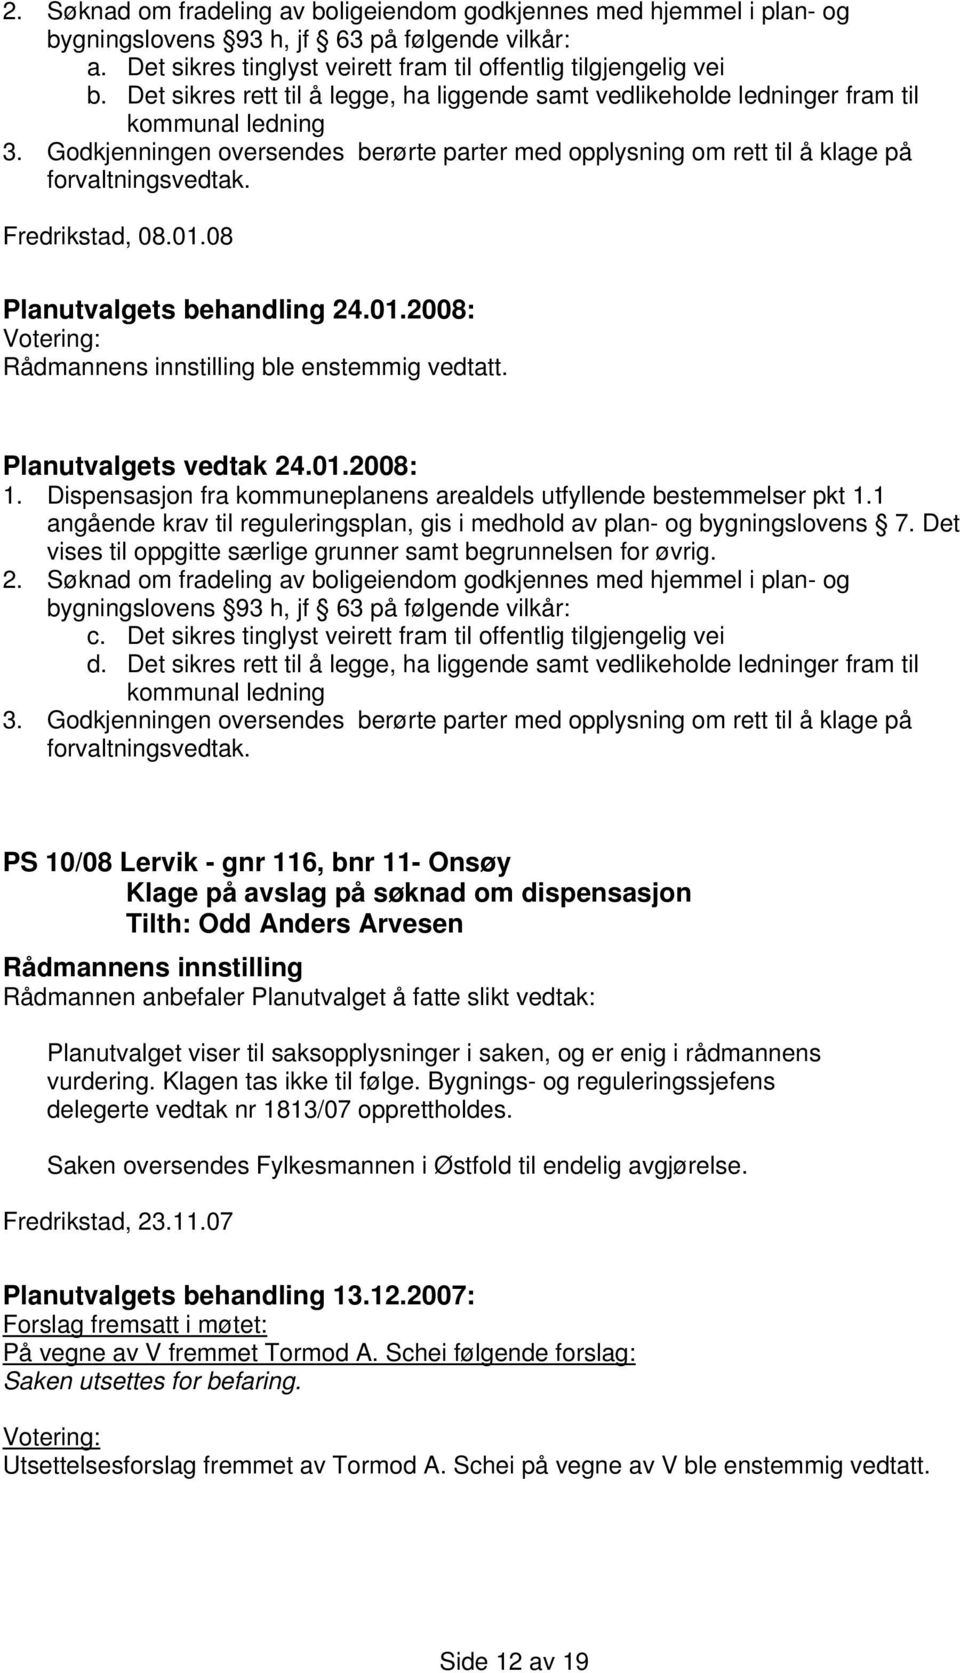 Fredrikstad, 08.01.08 ble enstemmig vedtatt. 1. Dispensasjon fra kommuneplanens arealdels utfyllende bestemmelser pkt 1.1 angående krav til reguleringsplan, gis i medhold av plan- og bygningslovens 7.